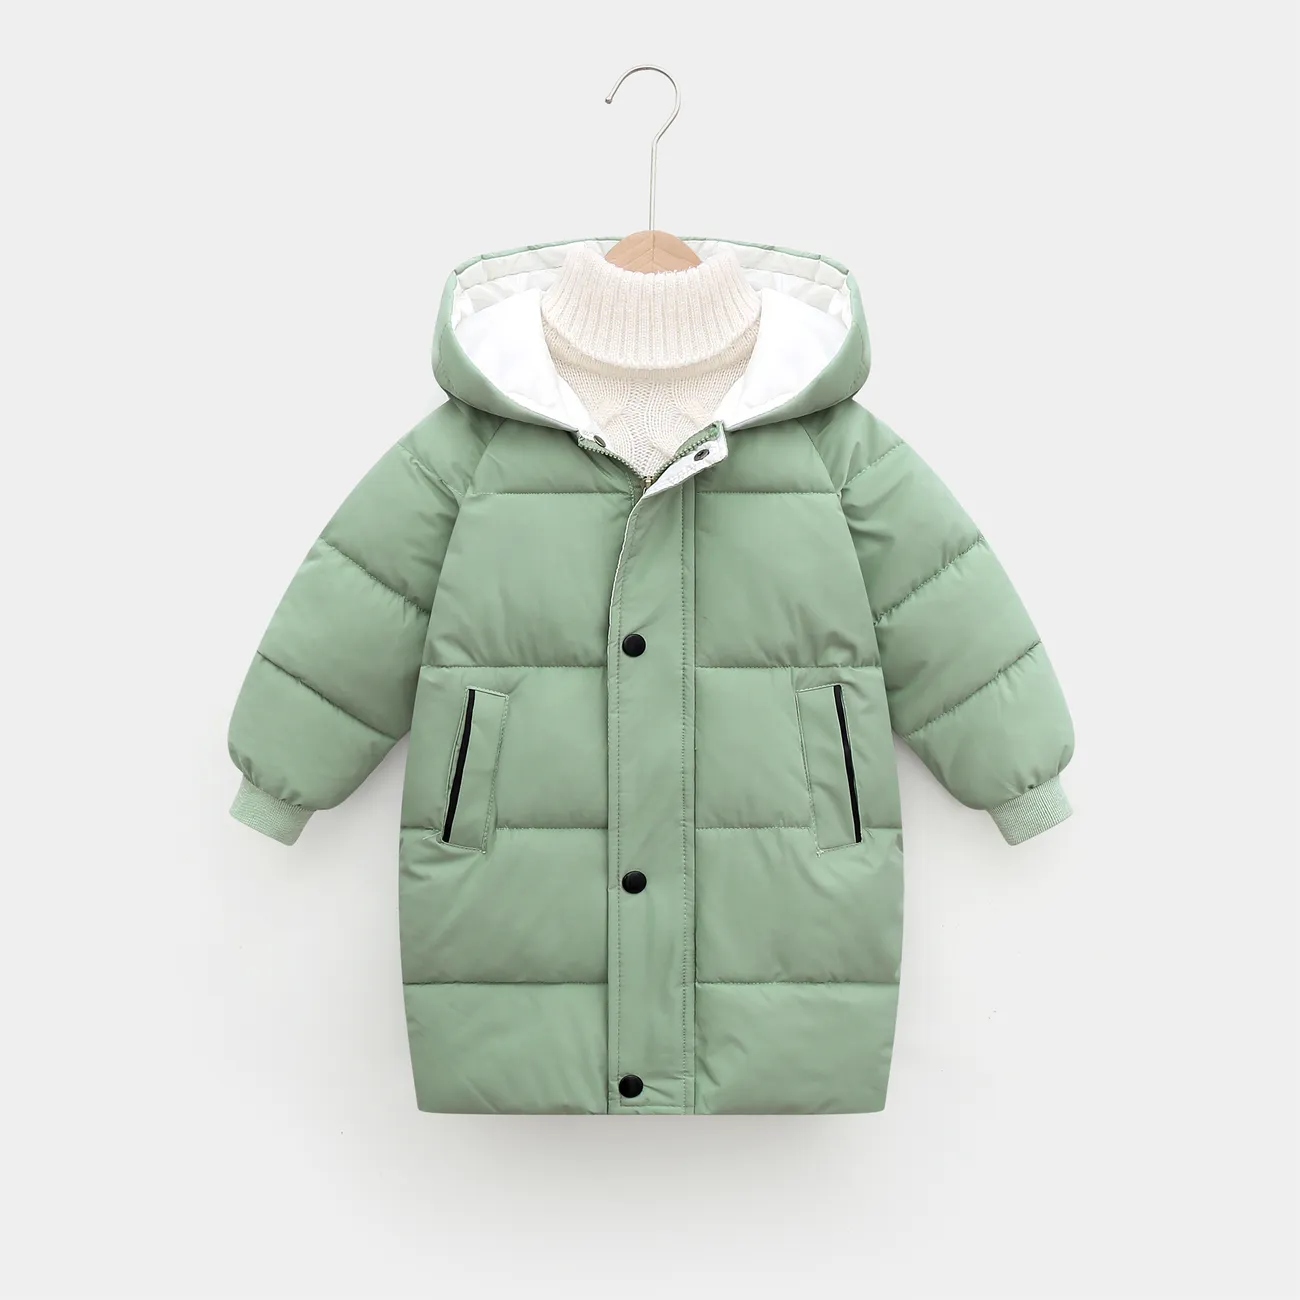 Einfarbiger, wattierter Mantel mit Kapuze und Knöpfen für Kleinkinder, Jungen/Mädchen grün big image 1